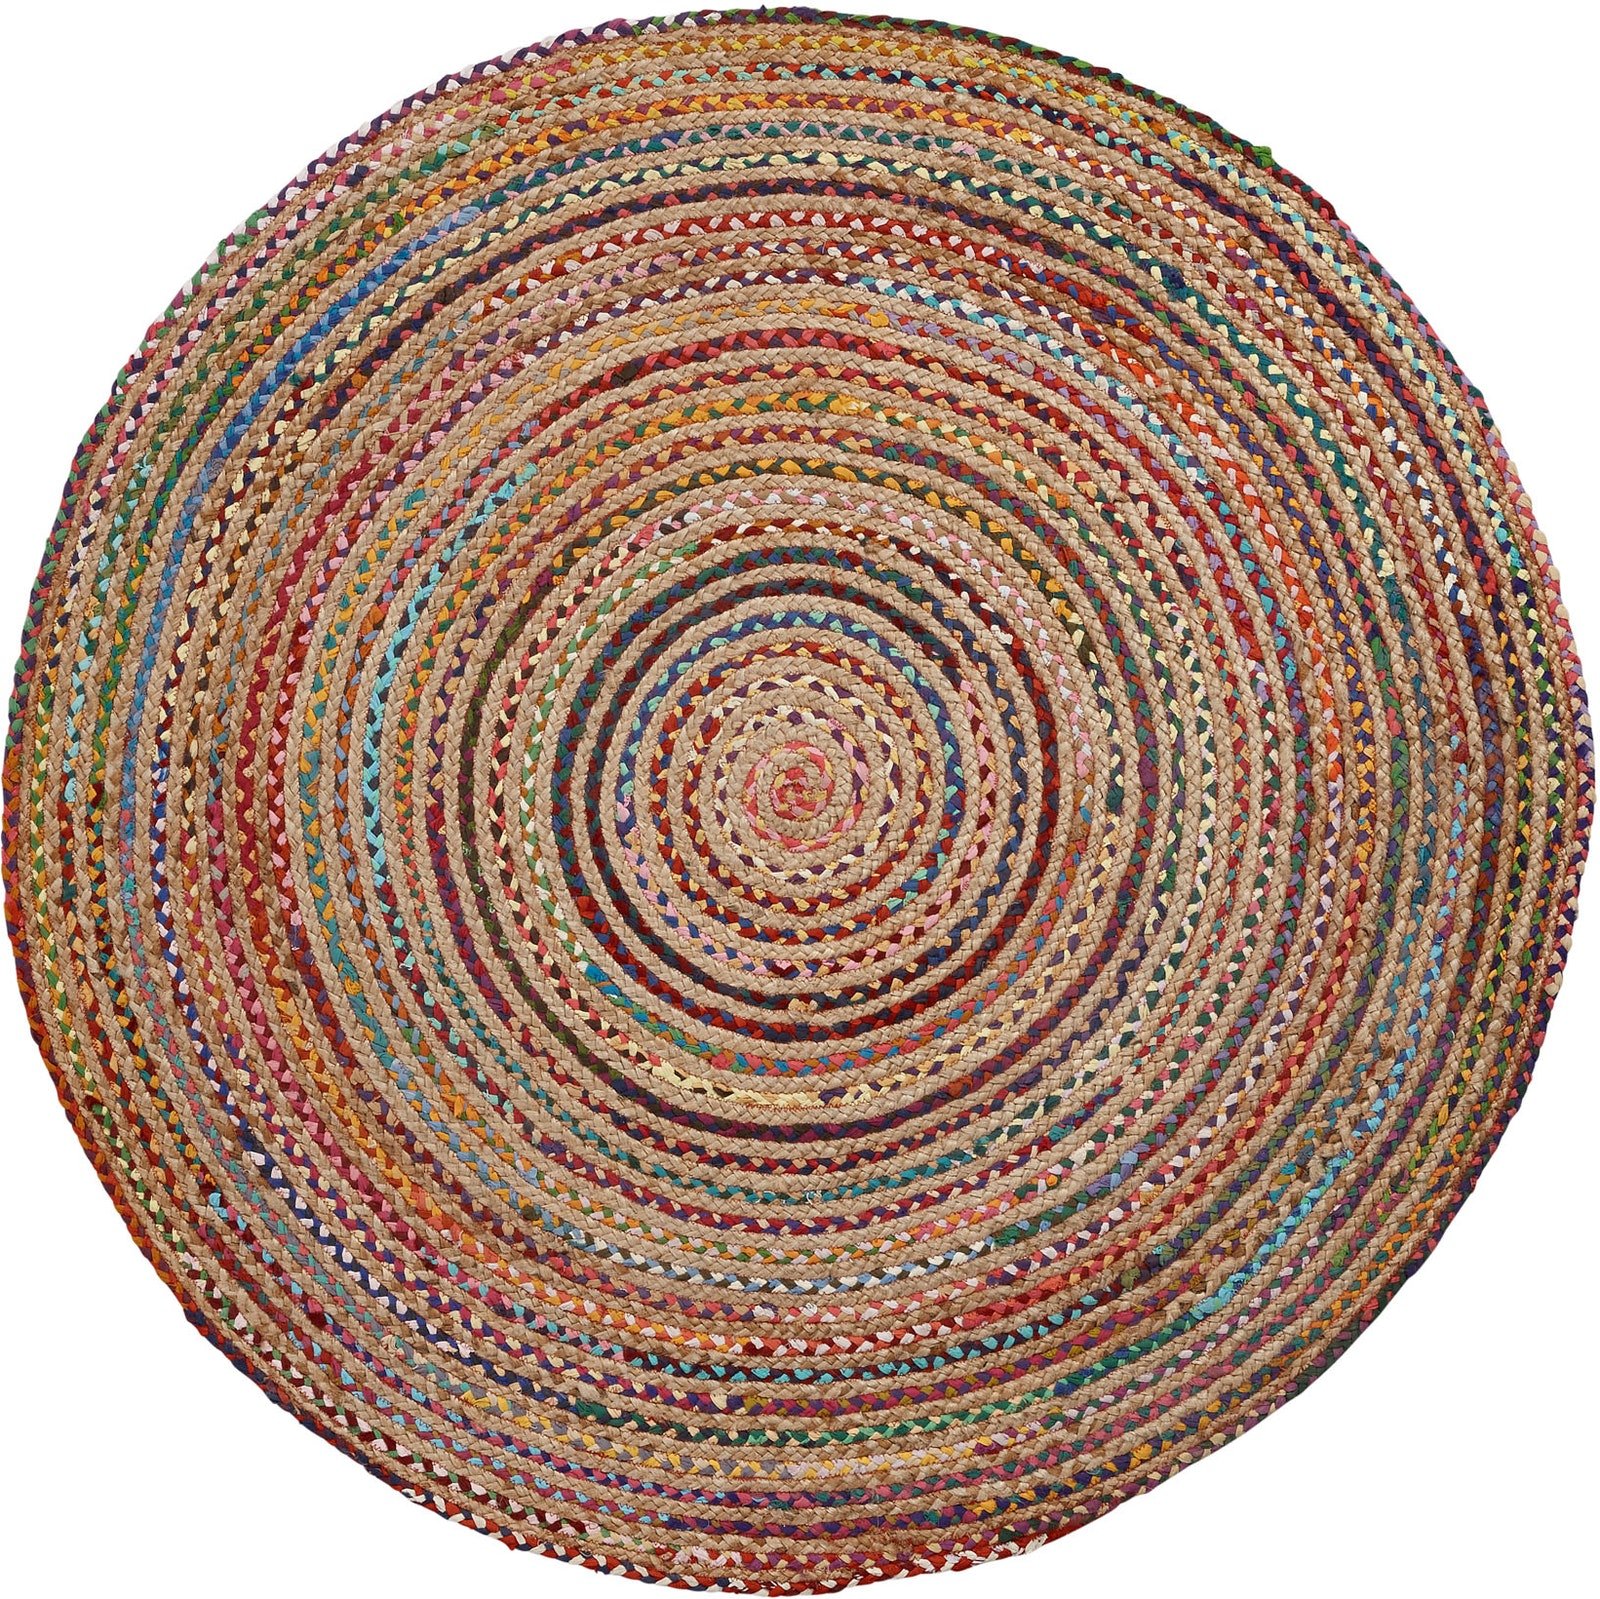 6: LAFORMA Samy gulvtæppe - natur/multifarvet jute/bomuld, rund (Ø100)